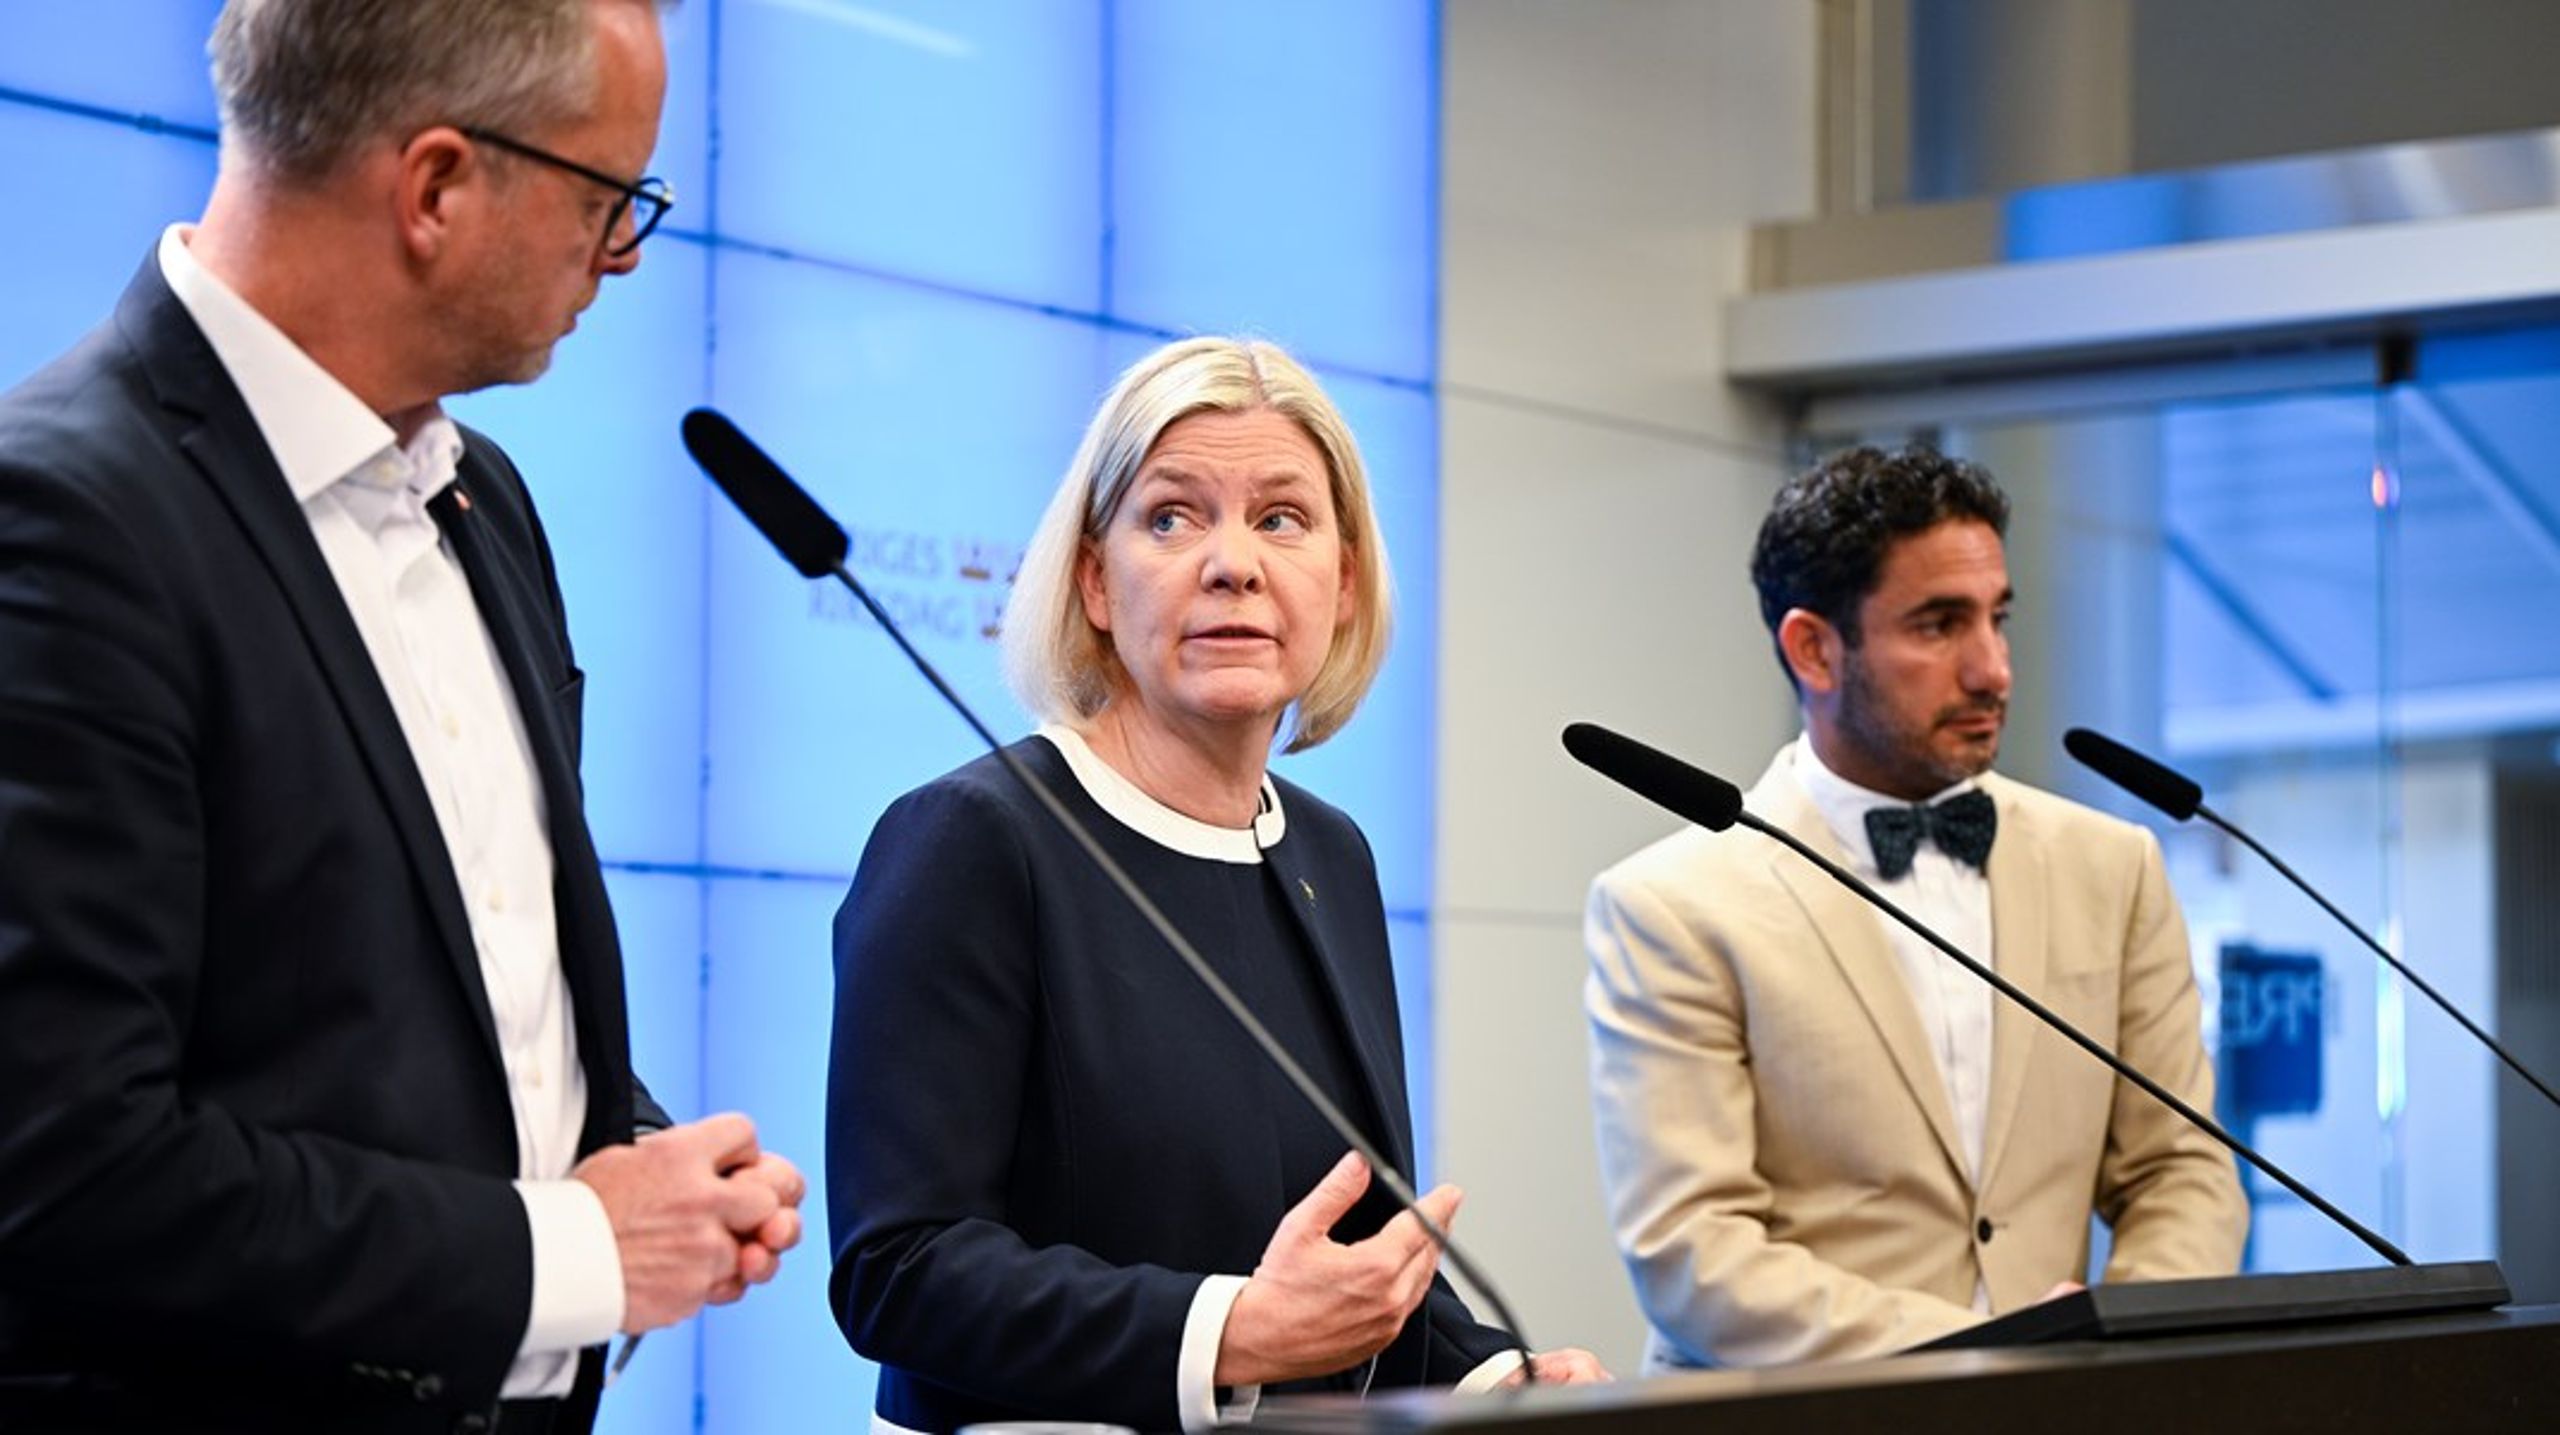 Mikael Damberg (S), Magdalena Andersson (S) och Ardalan Shekarabi (S) under pressträff där Socialdemokraterna presenterar förslag om vapenamnesti.